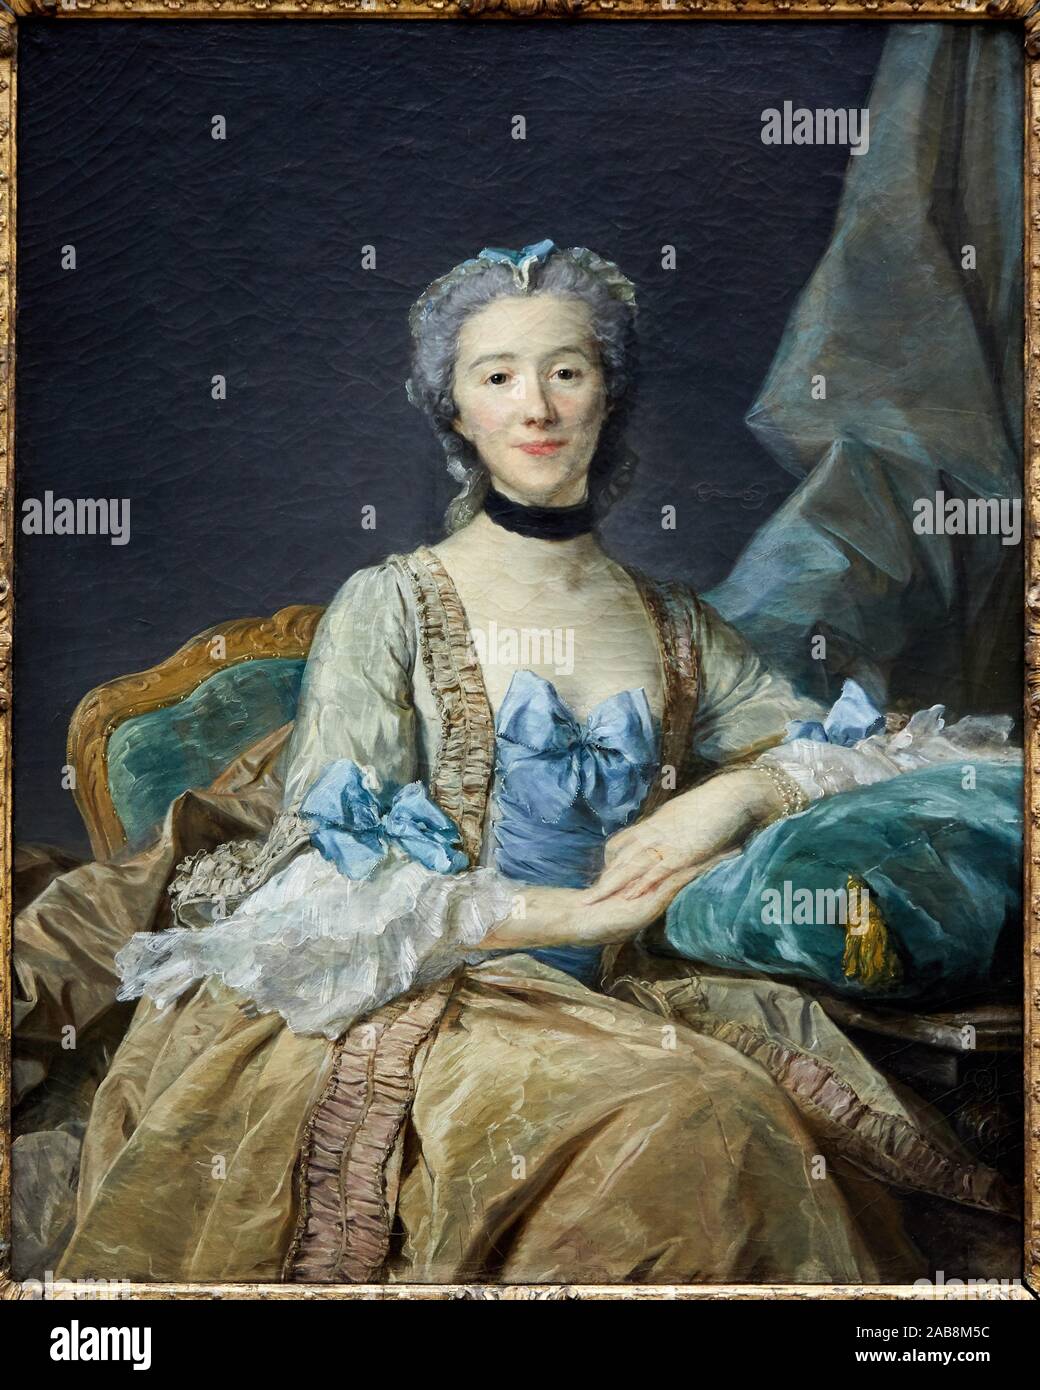 ''' Porträt der Madame de Sorquainville, Ehefrau von Berater im Parlament von Rouen'', 1749, Jean-Baptiste Perronneau, Musée du Louvre, Paris, Stockfoto